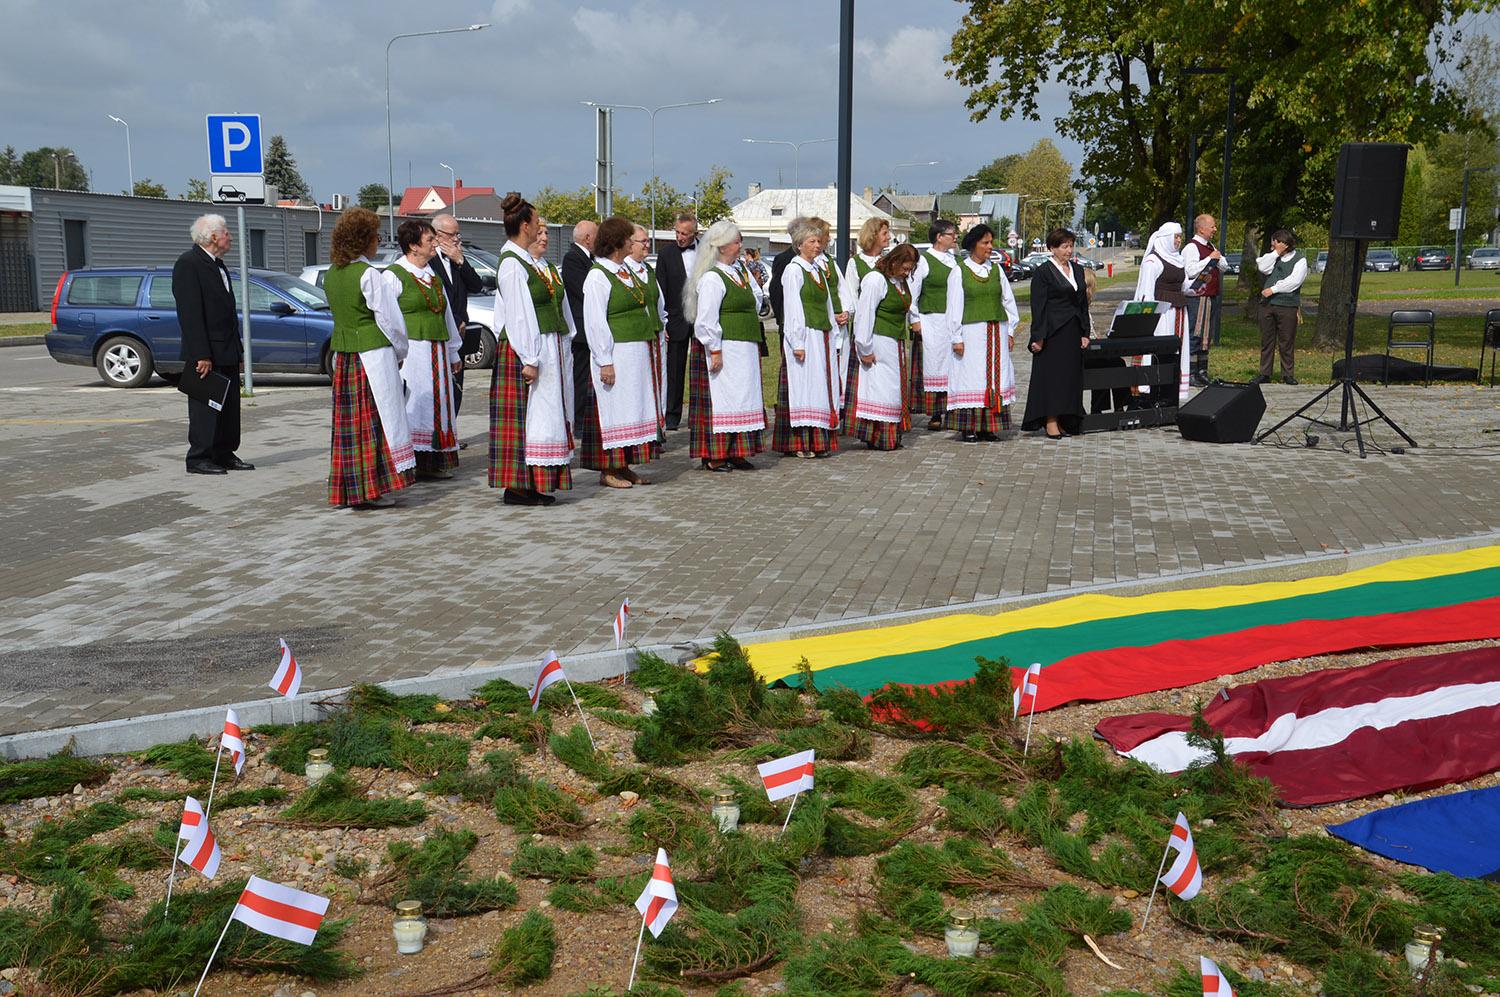 Rugpjūčio 23-iąją prisiminta ir kovojanti Baltarusija / Minėjimą baigė instrumentinio folkloro grupė „Ratilai“ iš Vilniaus.